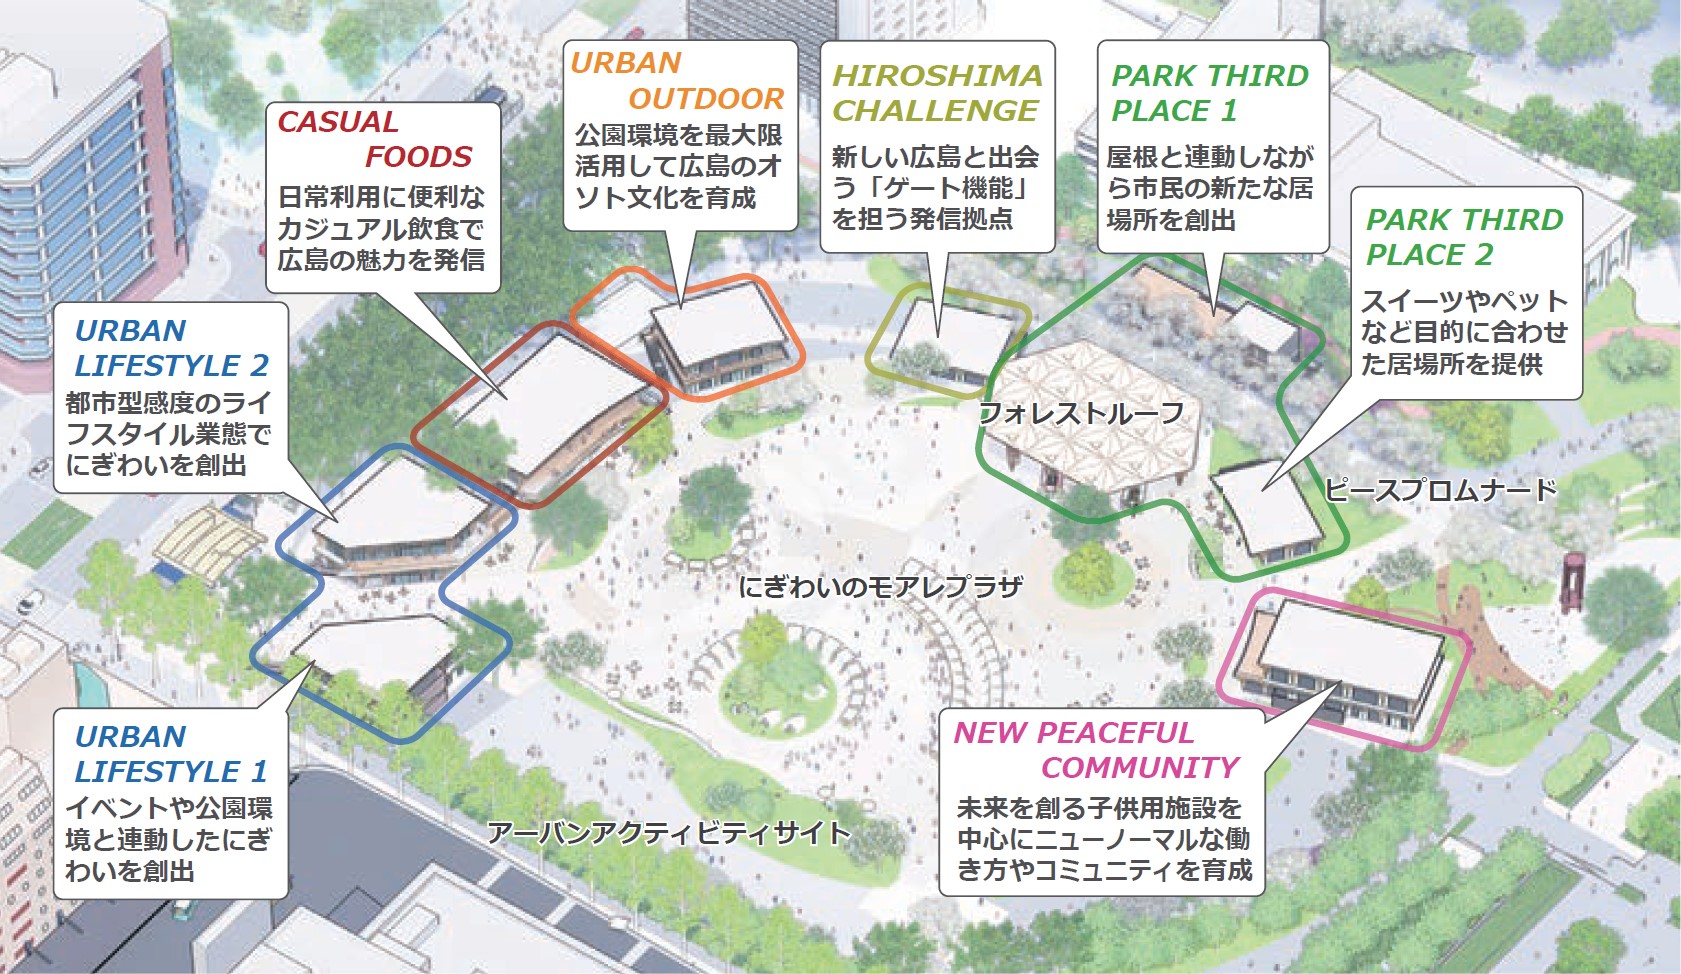 旧広島市民球場跡地の整備事業者に Ntt都市開発 を選定 Park Pfiを活用し飲食 物販施設など整備 And Build Hiroshima